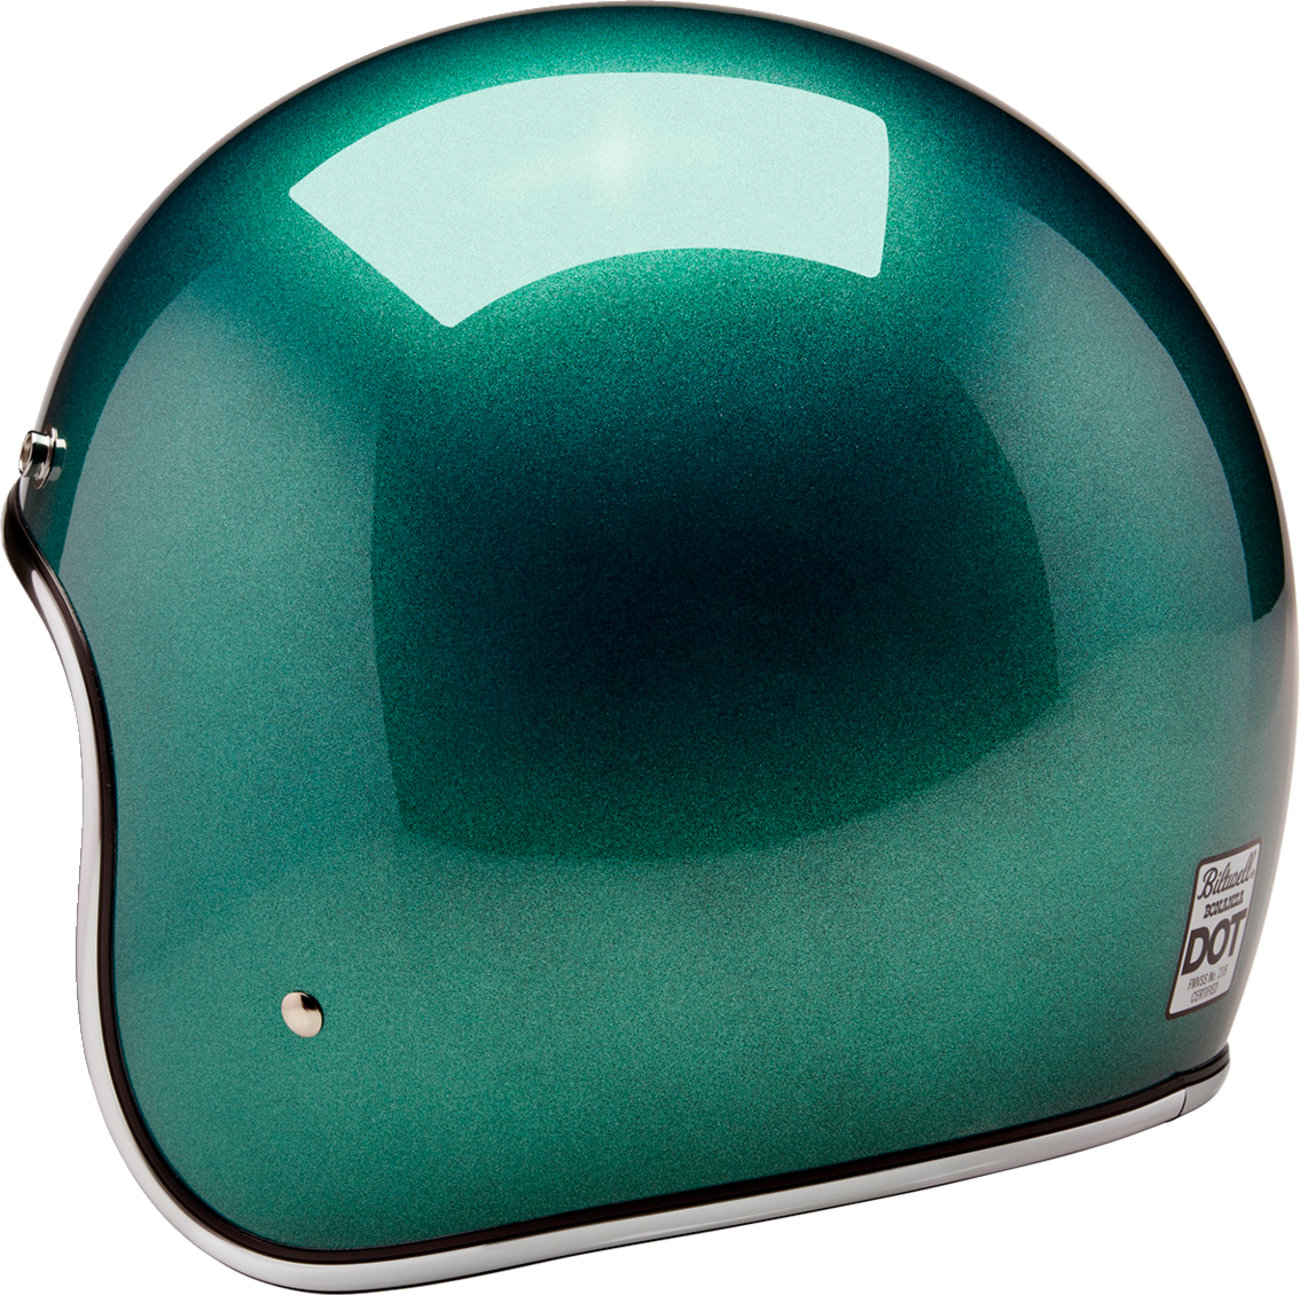 BILTWELL Bonanza Helmet - Metallic Catalina Green - XL 1001-358-205